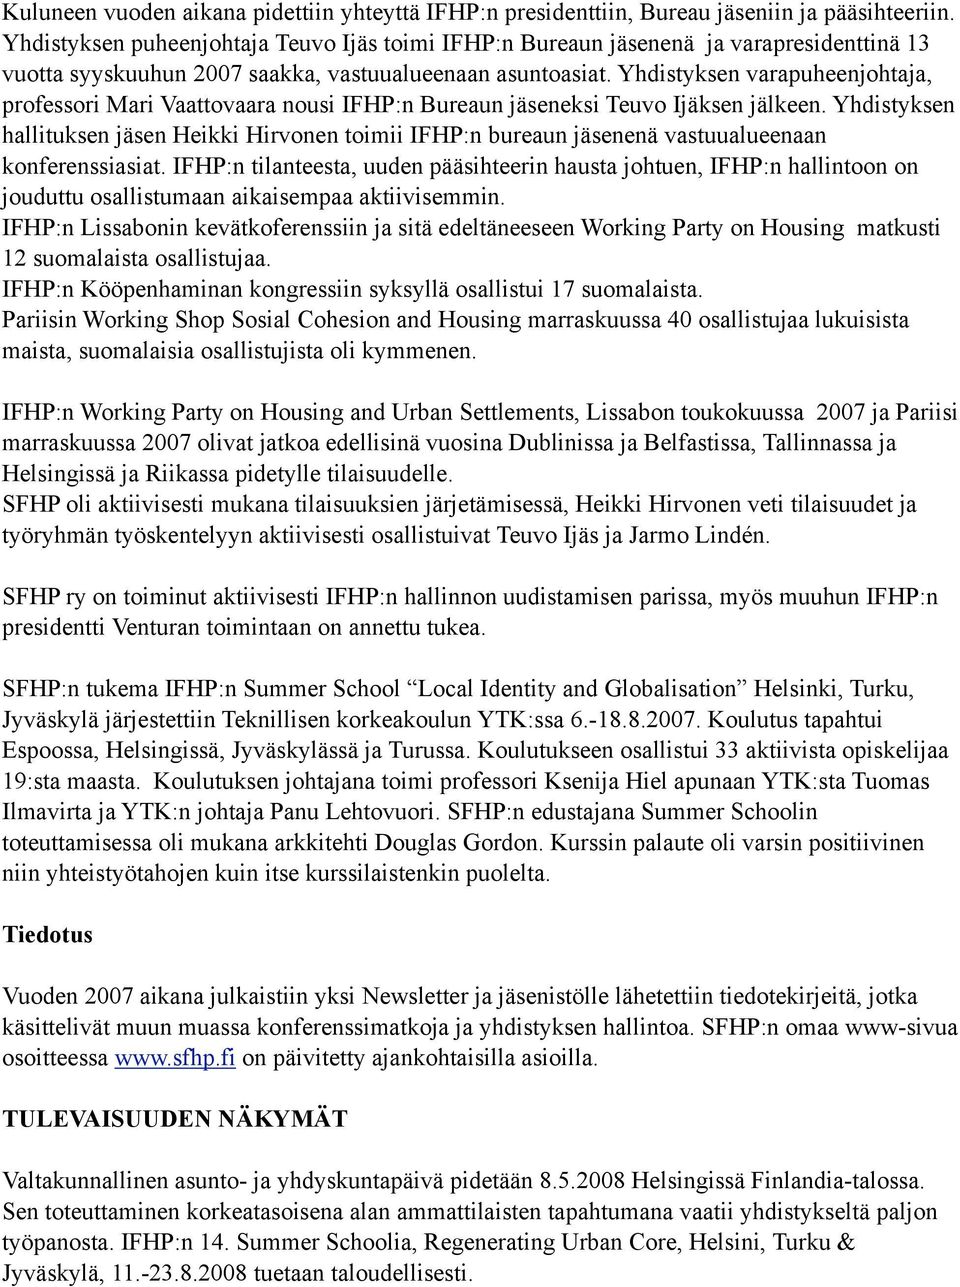 Yhdistyksen varapuheenjohtaja, professori Mari Vaattovaara nousi IFHP:n Bureaun jäseneksi Teuvo Ijäksen jälkeen.